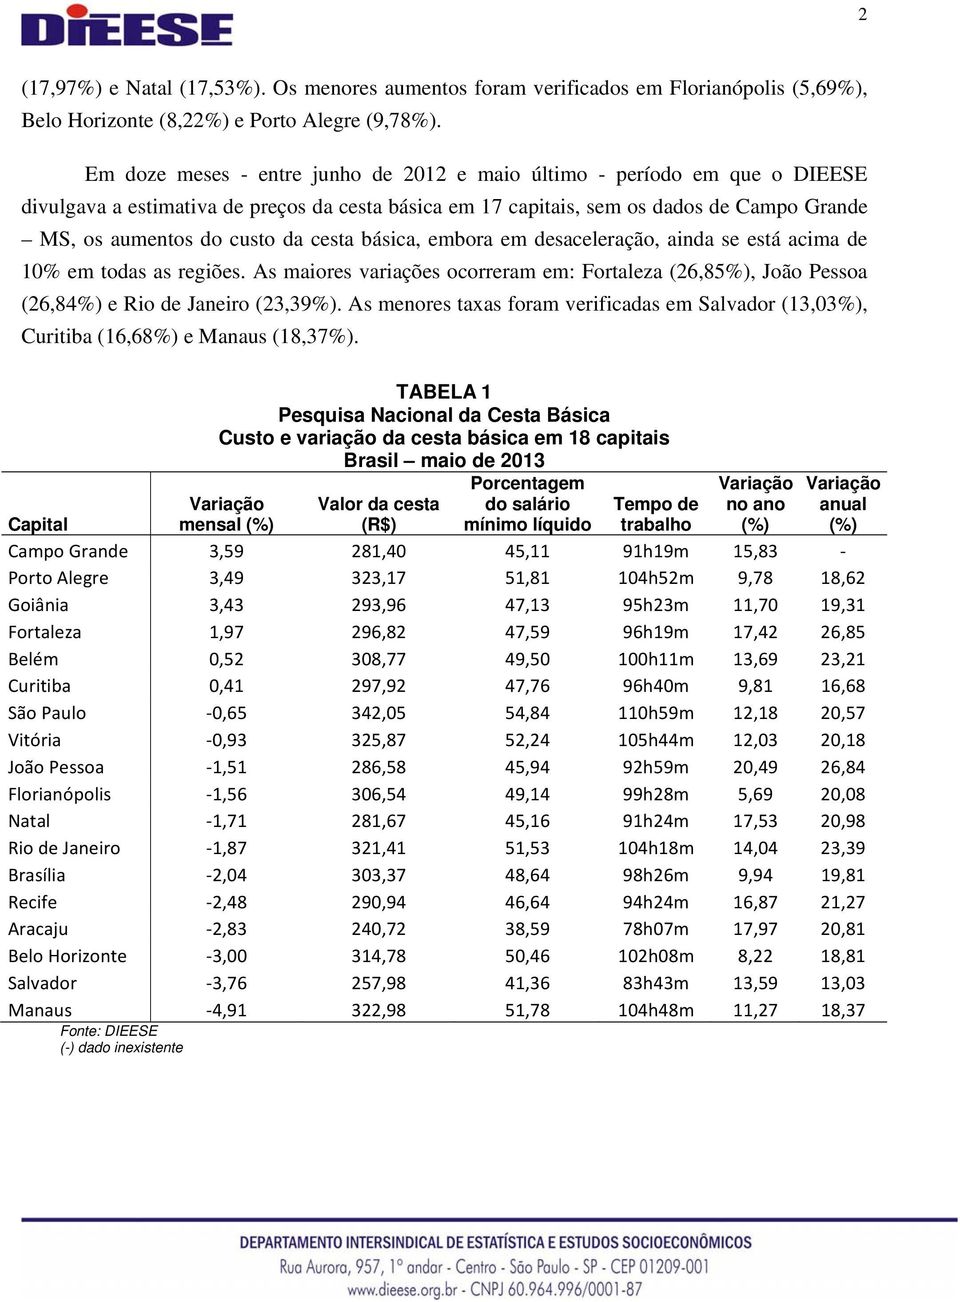 cesta básica, embora em desaceleração, ainda se está acima de 10% em todas as regiões. As maiores variações ocorreram em: Fortaleza (26,85%), João Pessoa (26,84%) e Rio de Janeiro (23,39%).